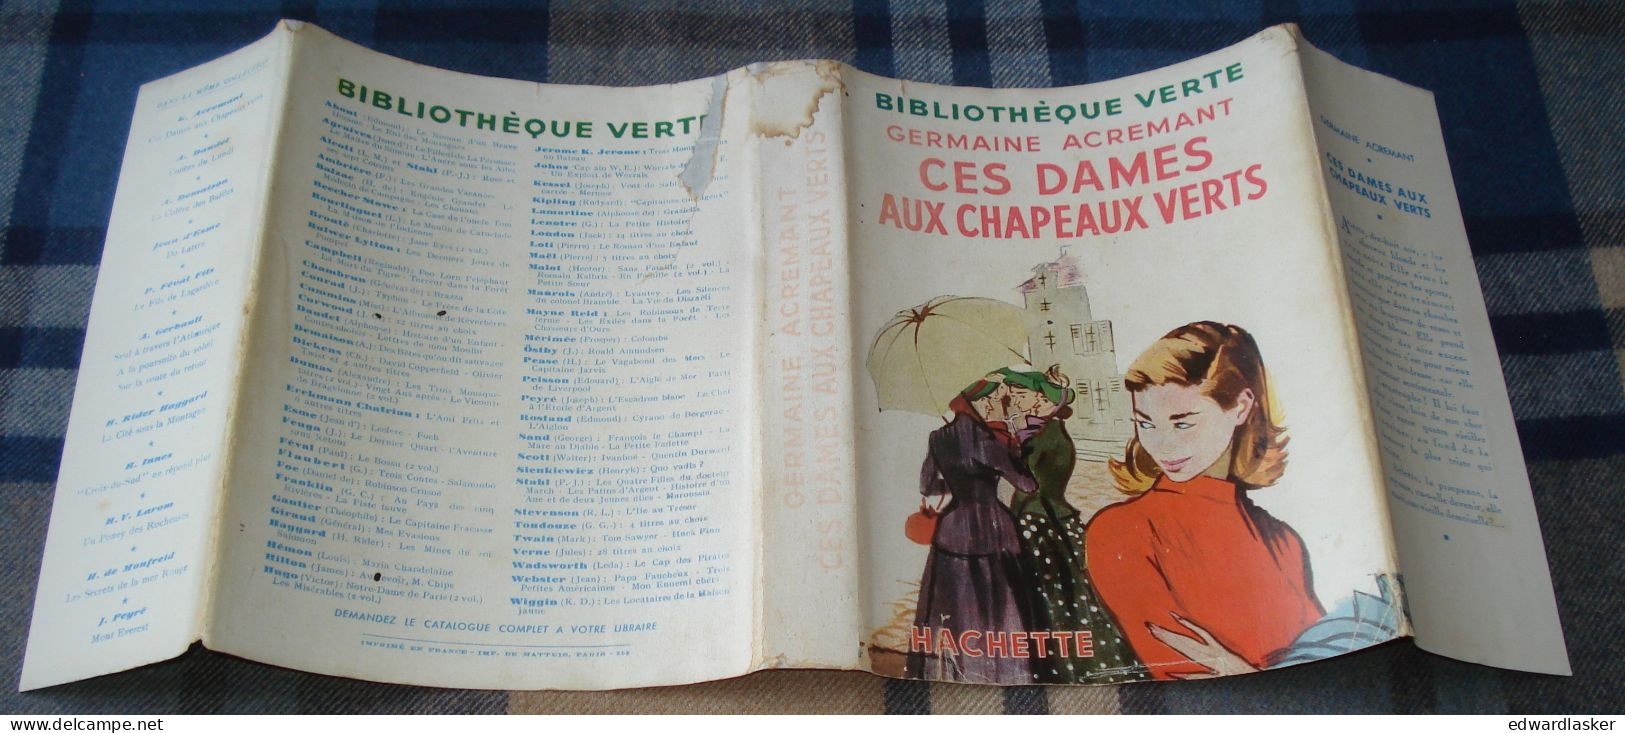 BIBLIOTHEQUE VERTE : Ces dames aux chapeaux verts /Germaine Acremant - jaquette 1952 - Jacques Demachy